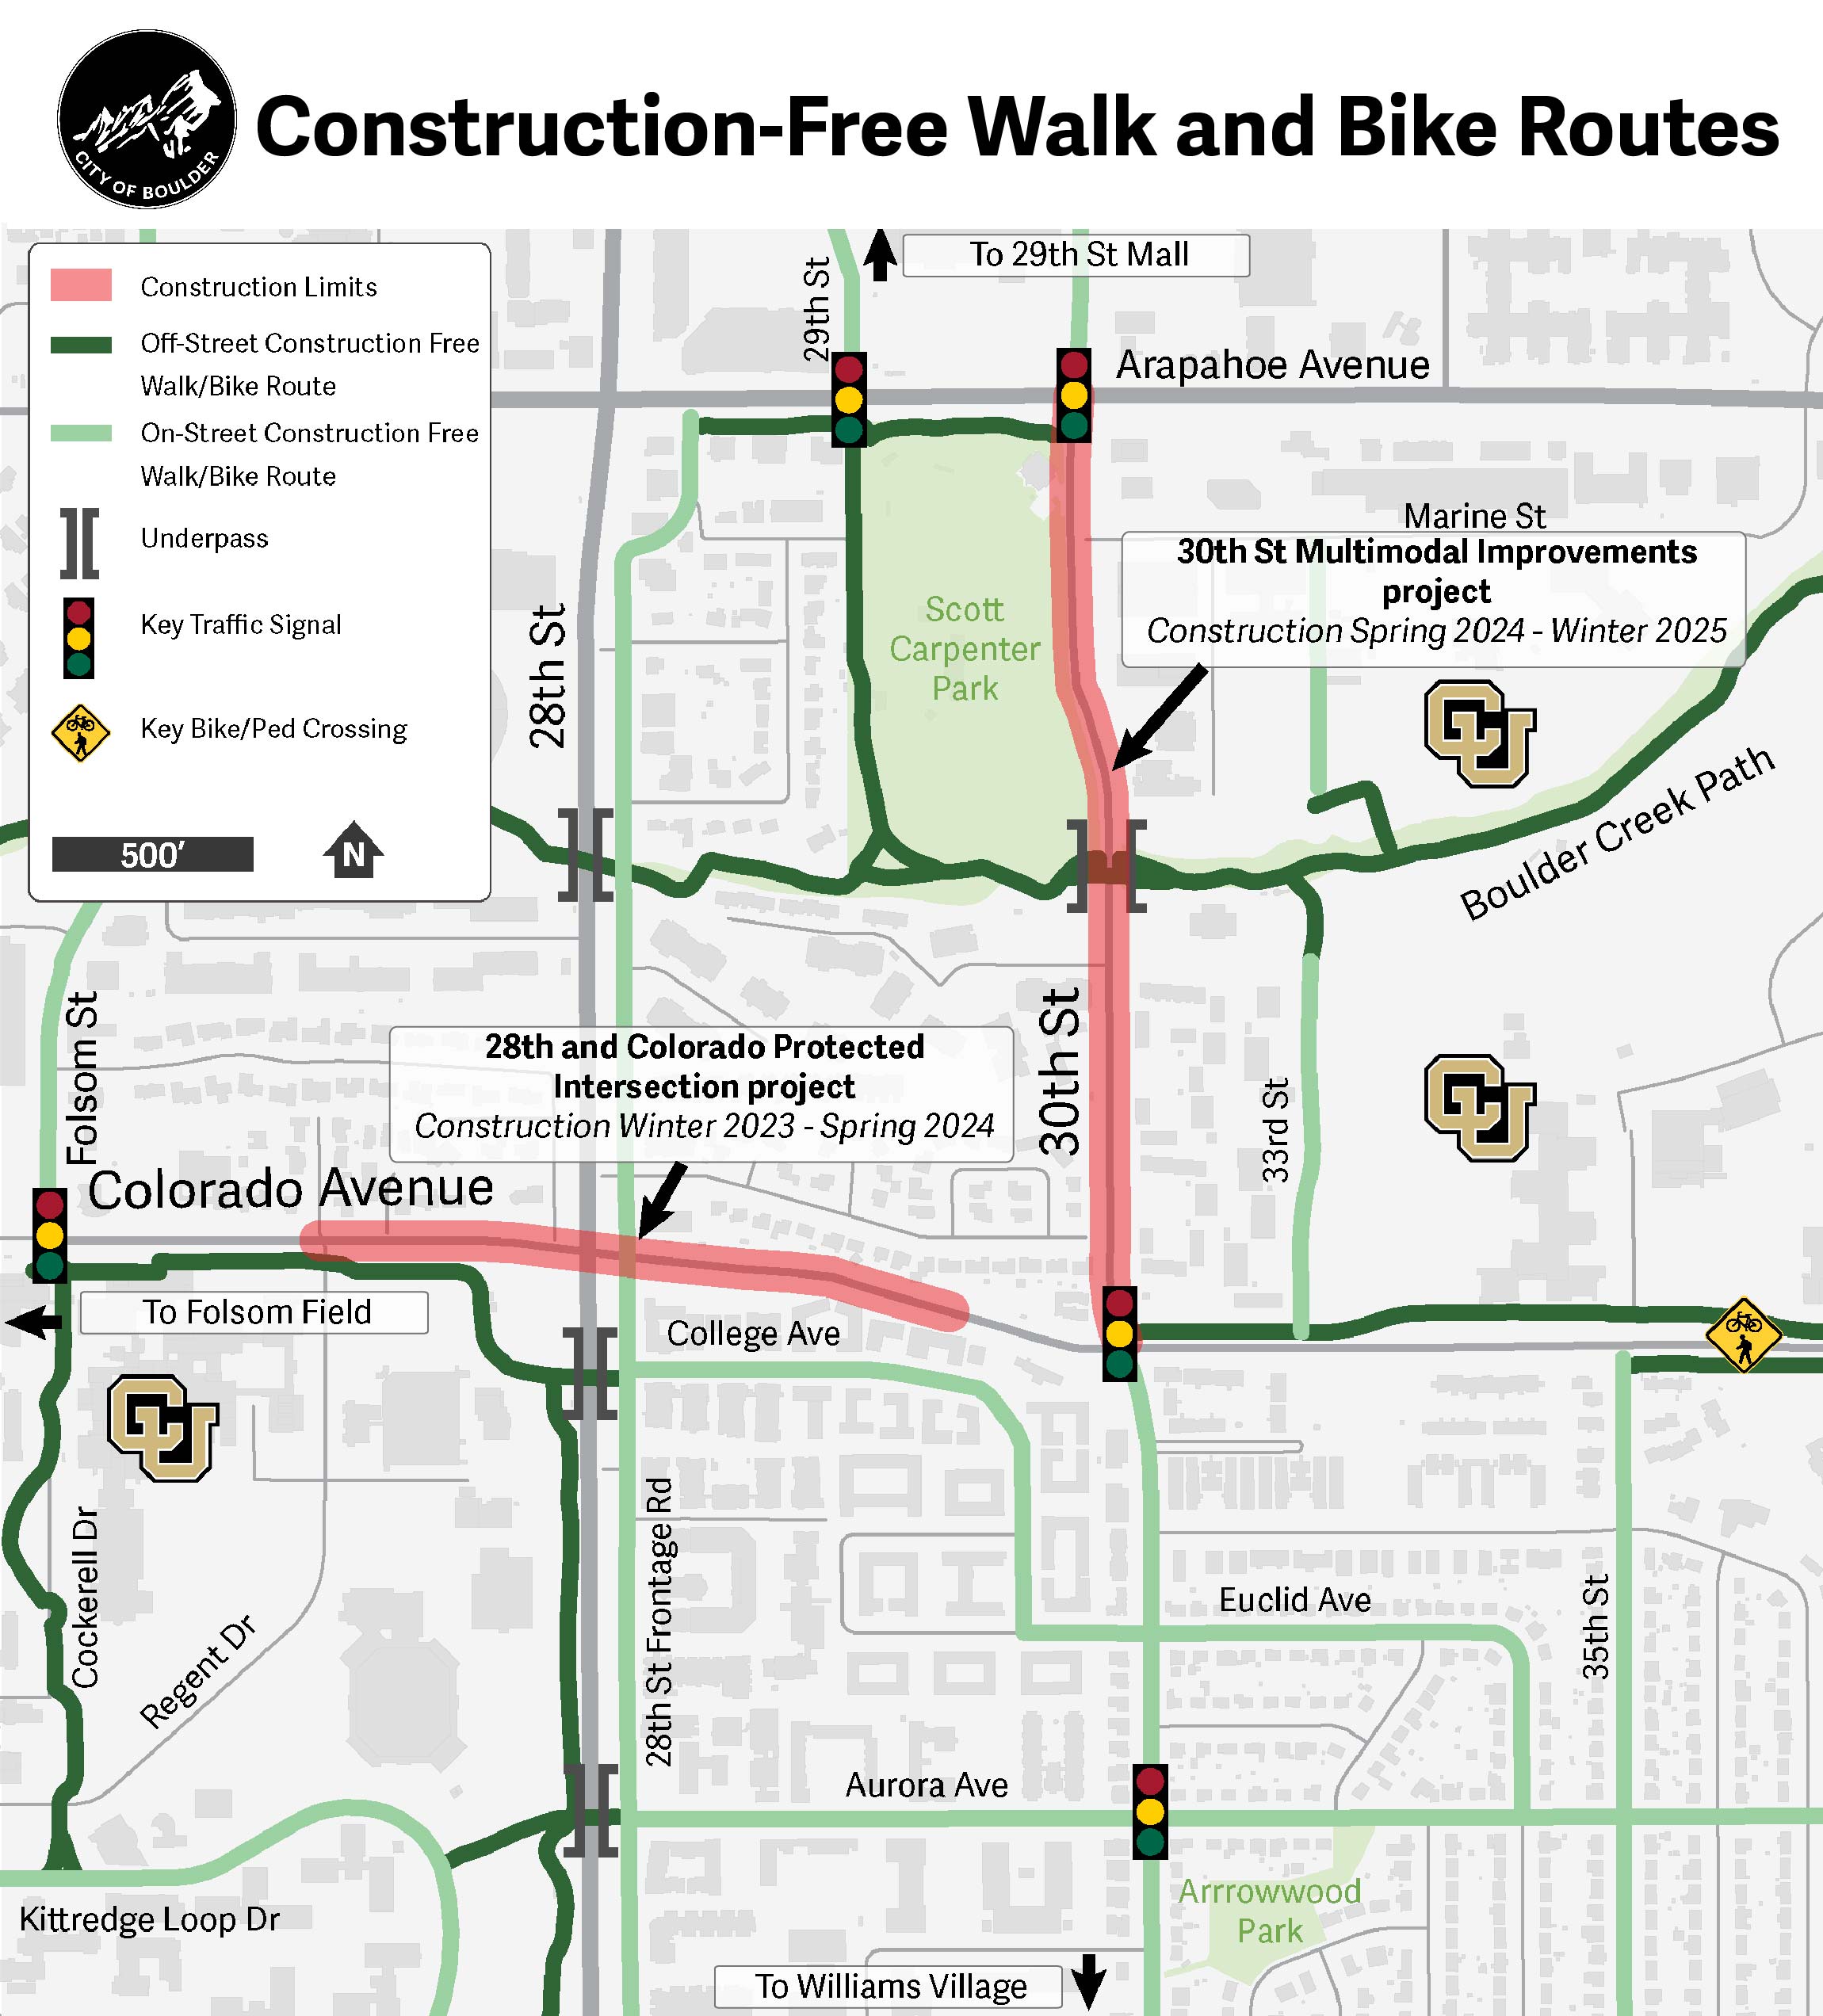 Rutas para caminar y andar en bicicleta sin construcción en 30th Street y Colorado Avenue. Descripción larga en el título.